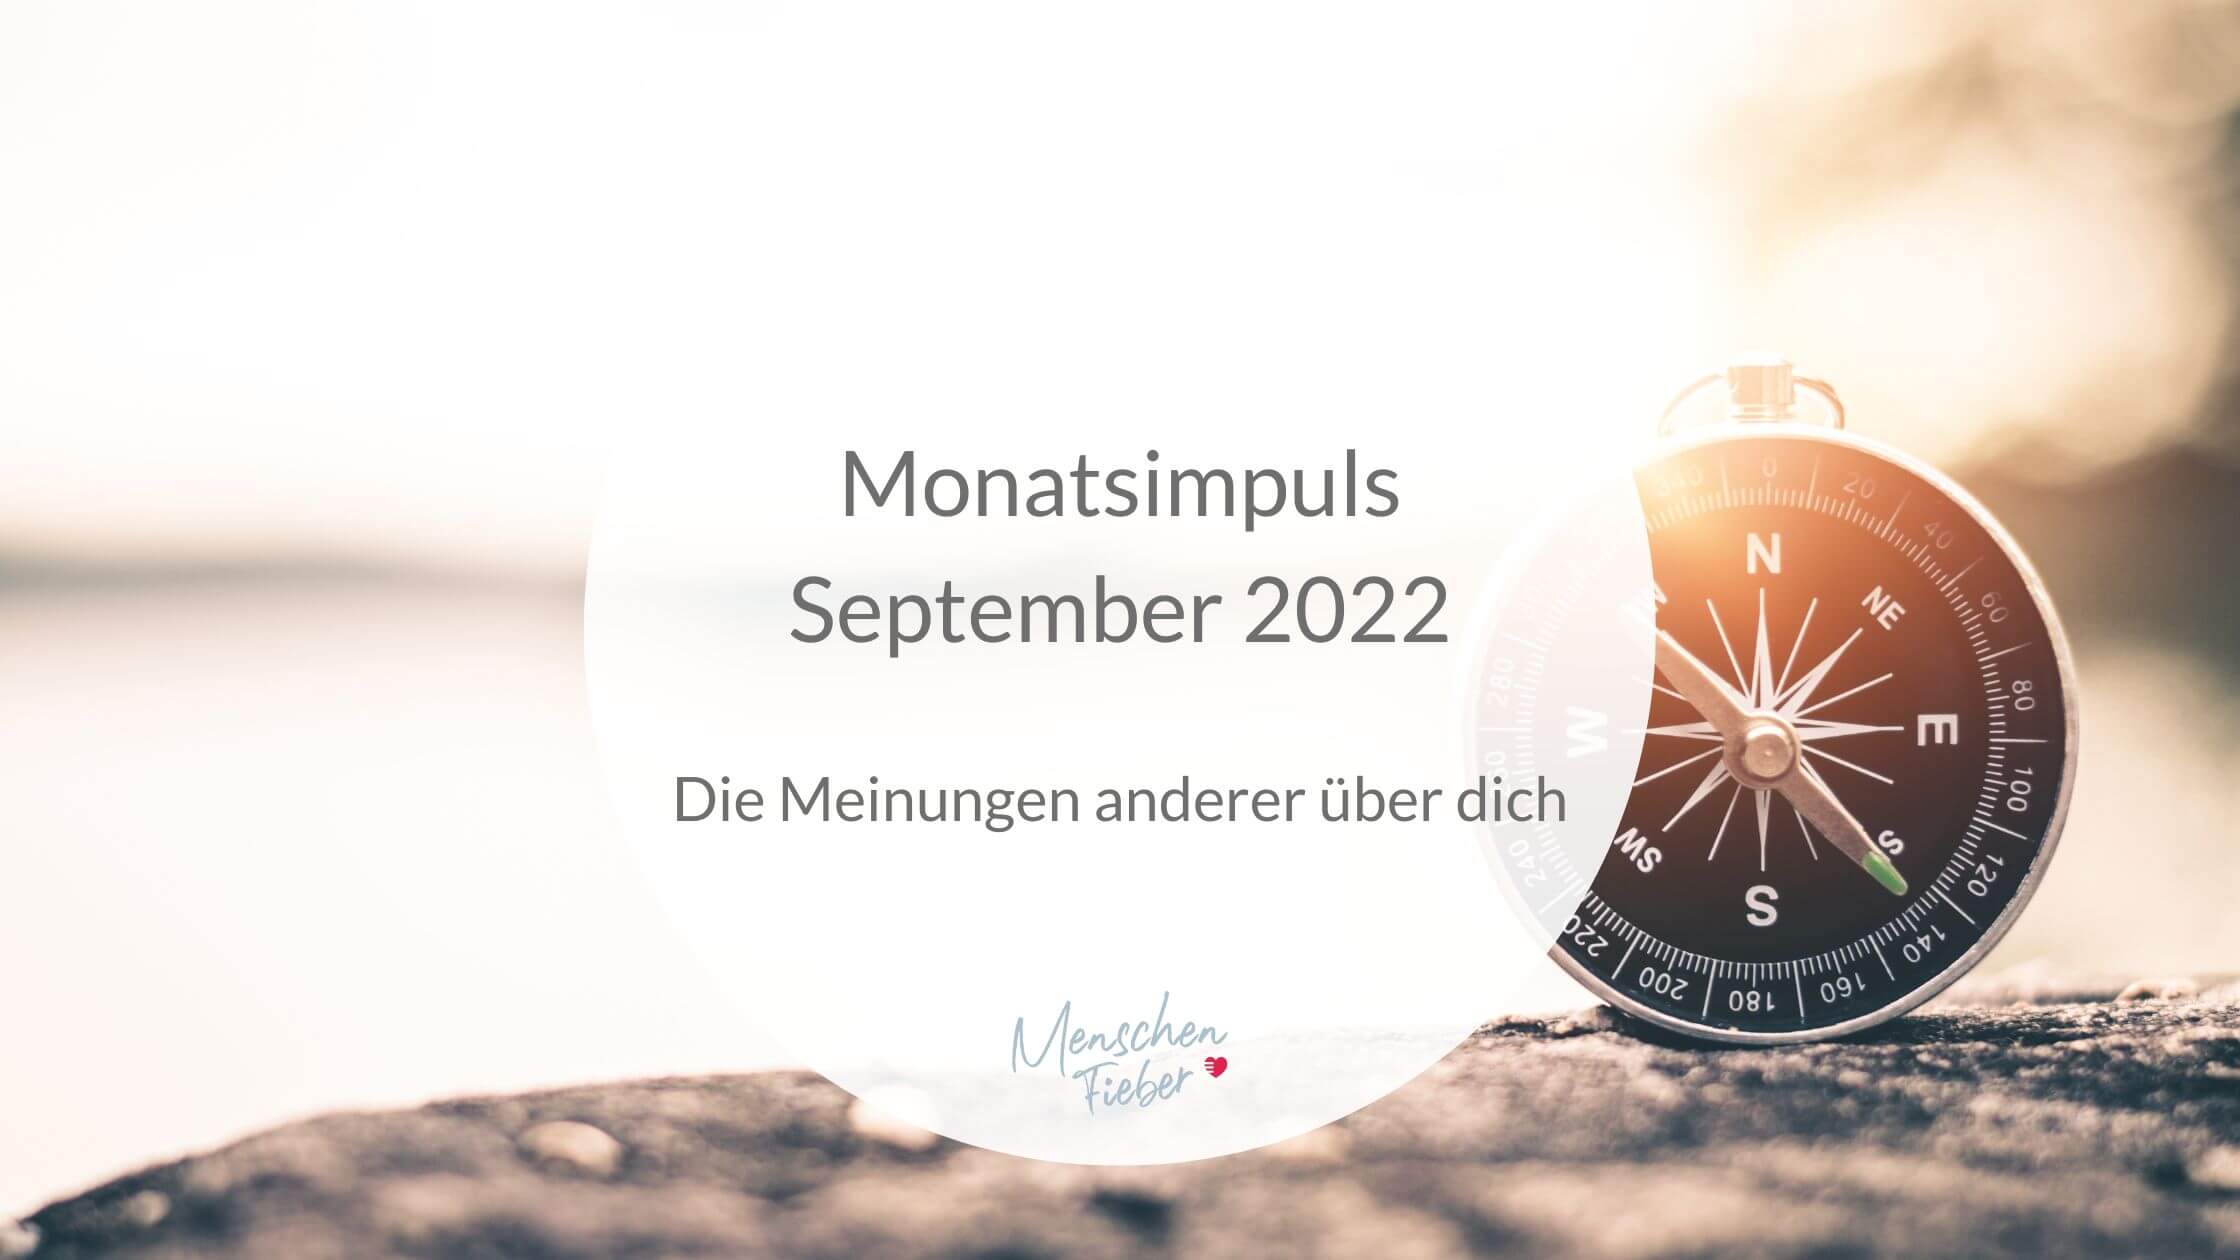 Monatsimpuls September 2022: Die Meinungen anderer über dich